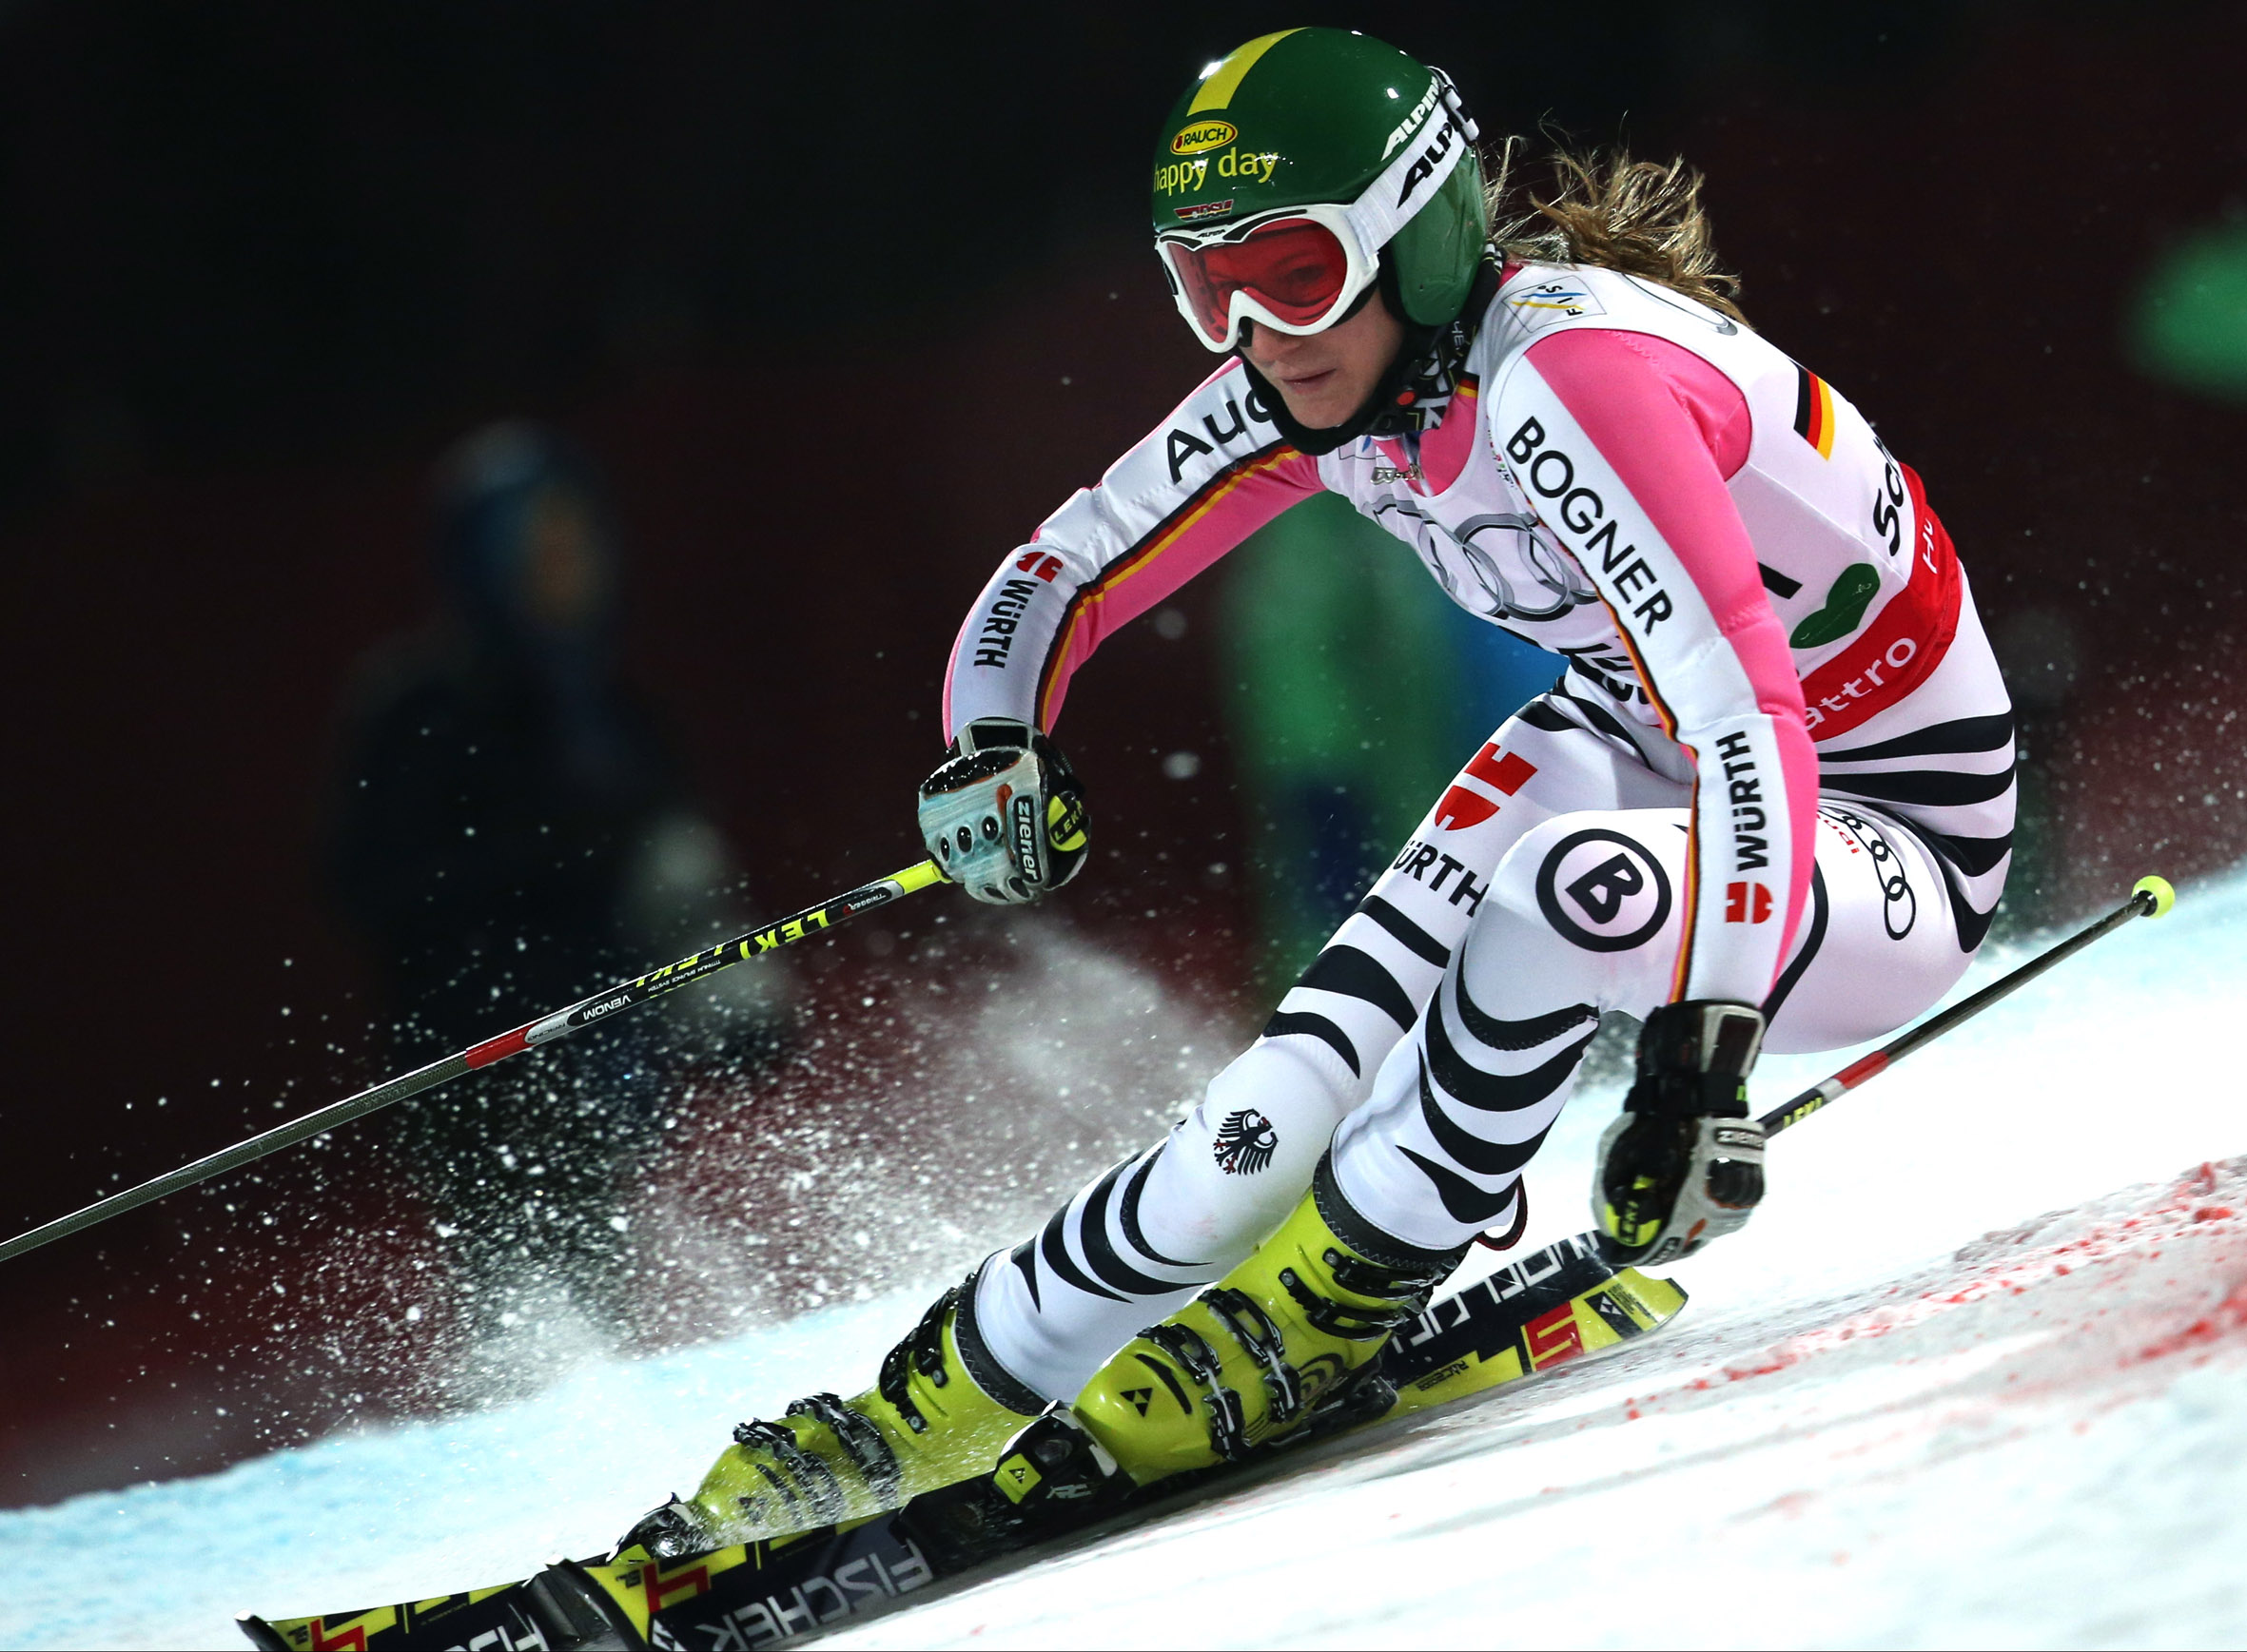 El Team FISCHER consigue seis medallas en los Campeonatos del Mundo de esquí alpino celebrados en Schladming (Austria) 